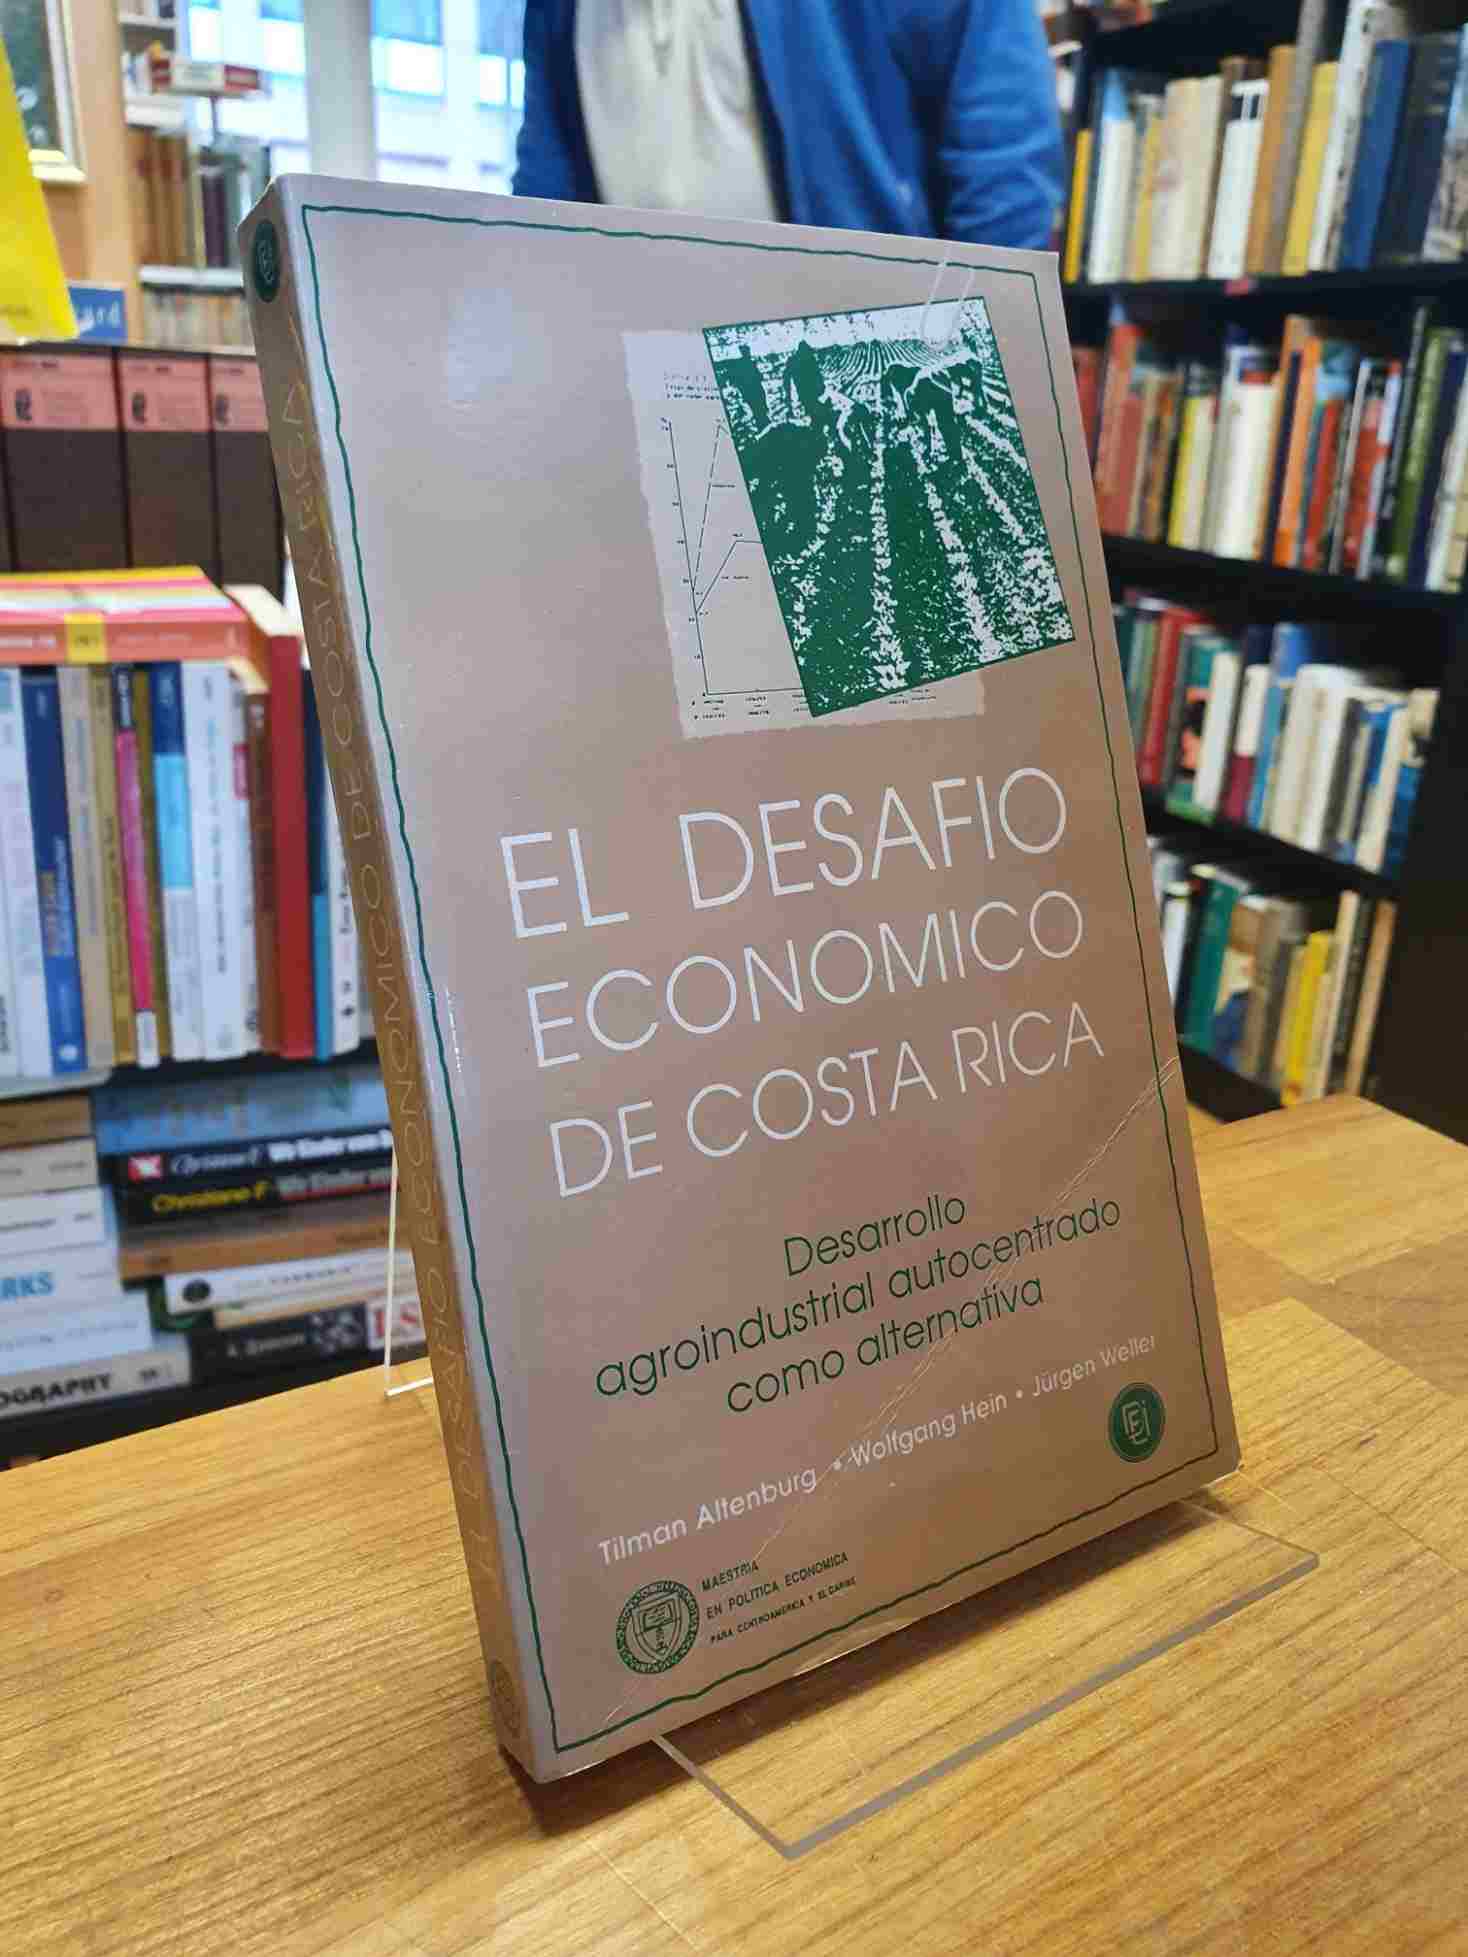 Altenburg, El desafío económico de Costa Rica – Desarrollo agroindustrial autoce